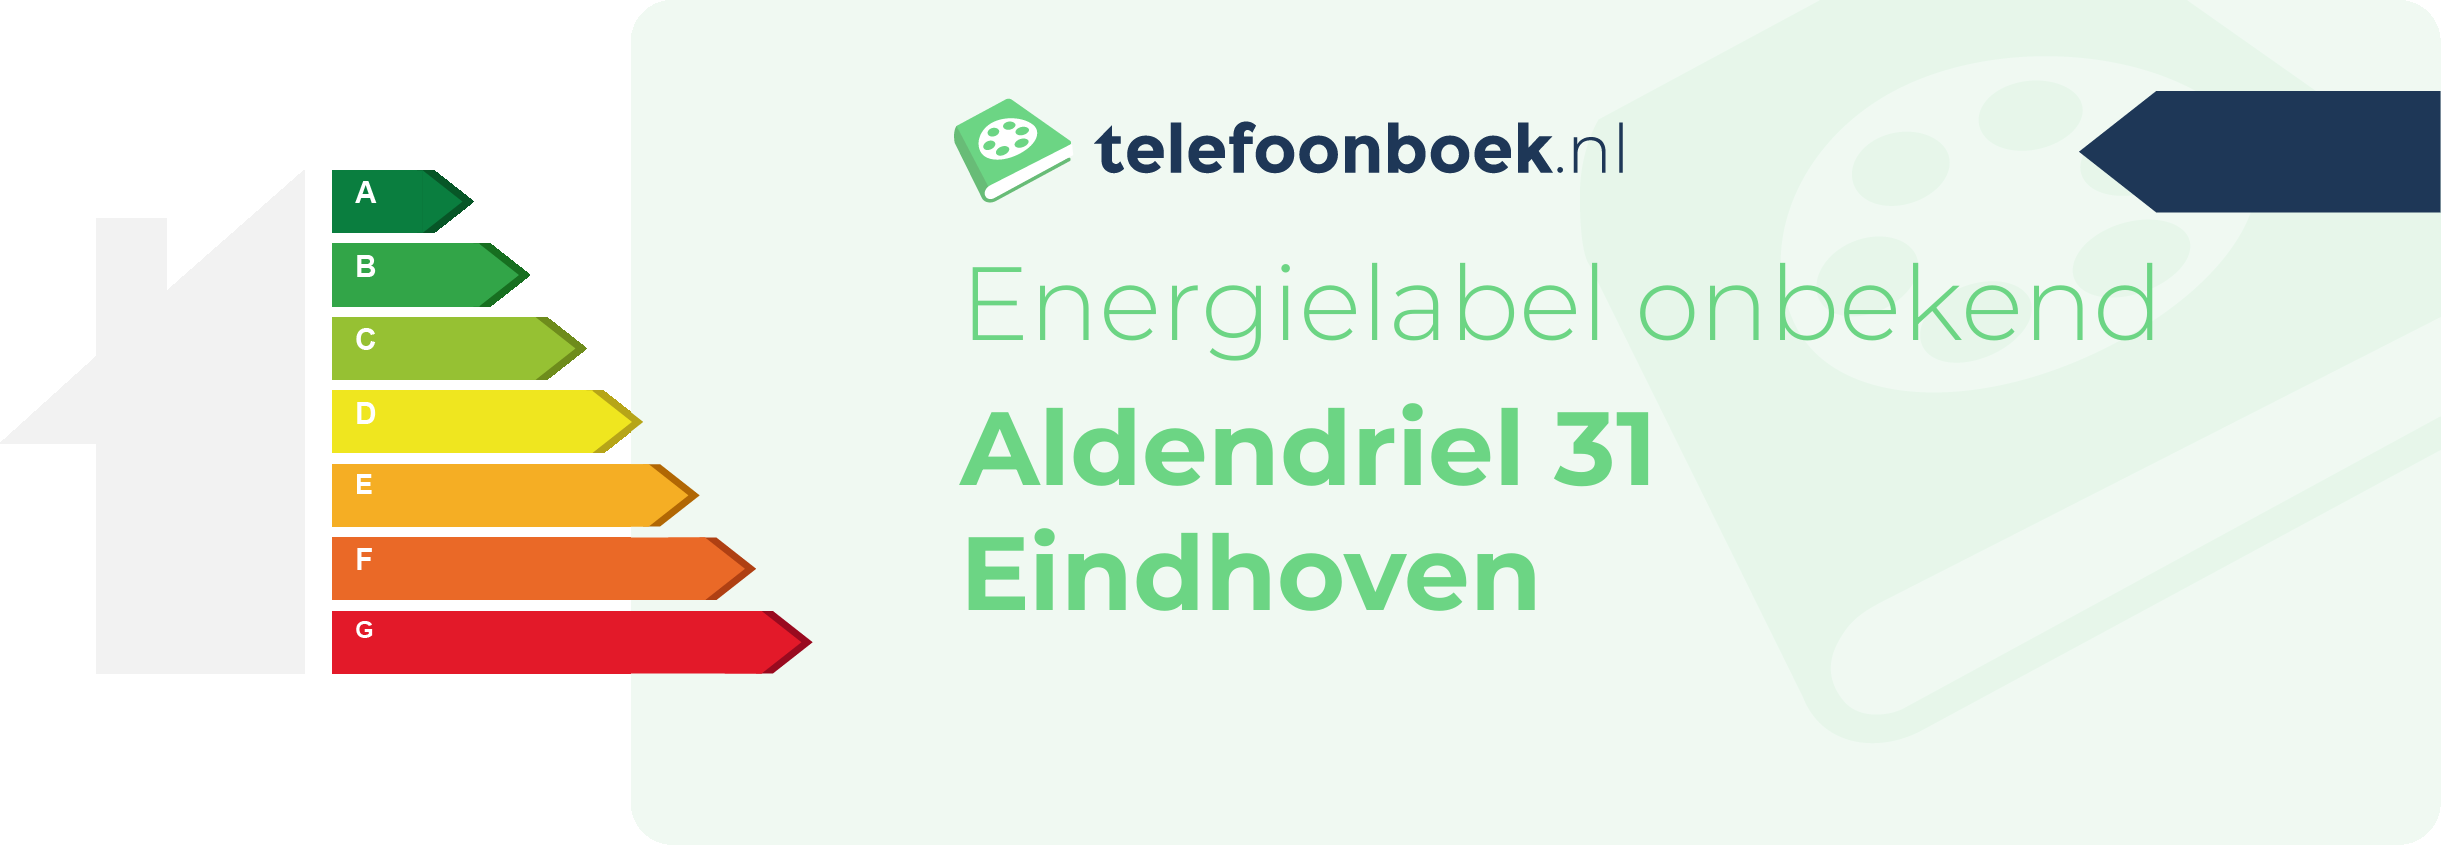 Energielabel Aldendriel 31 Eindhoven